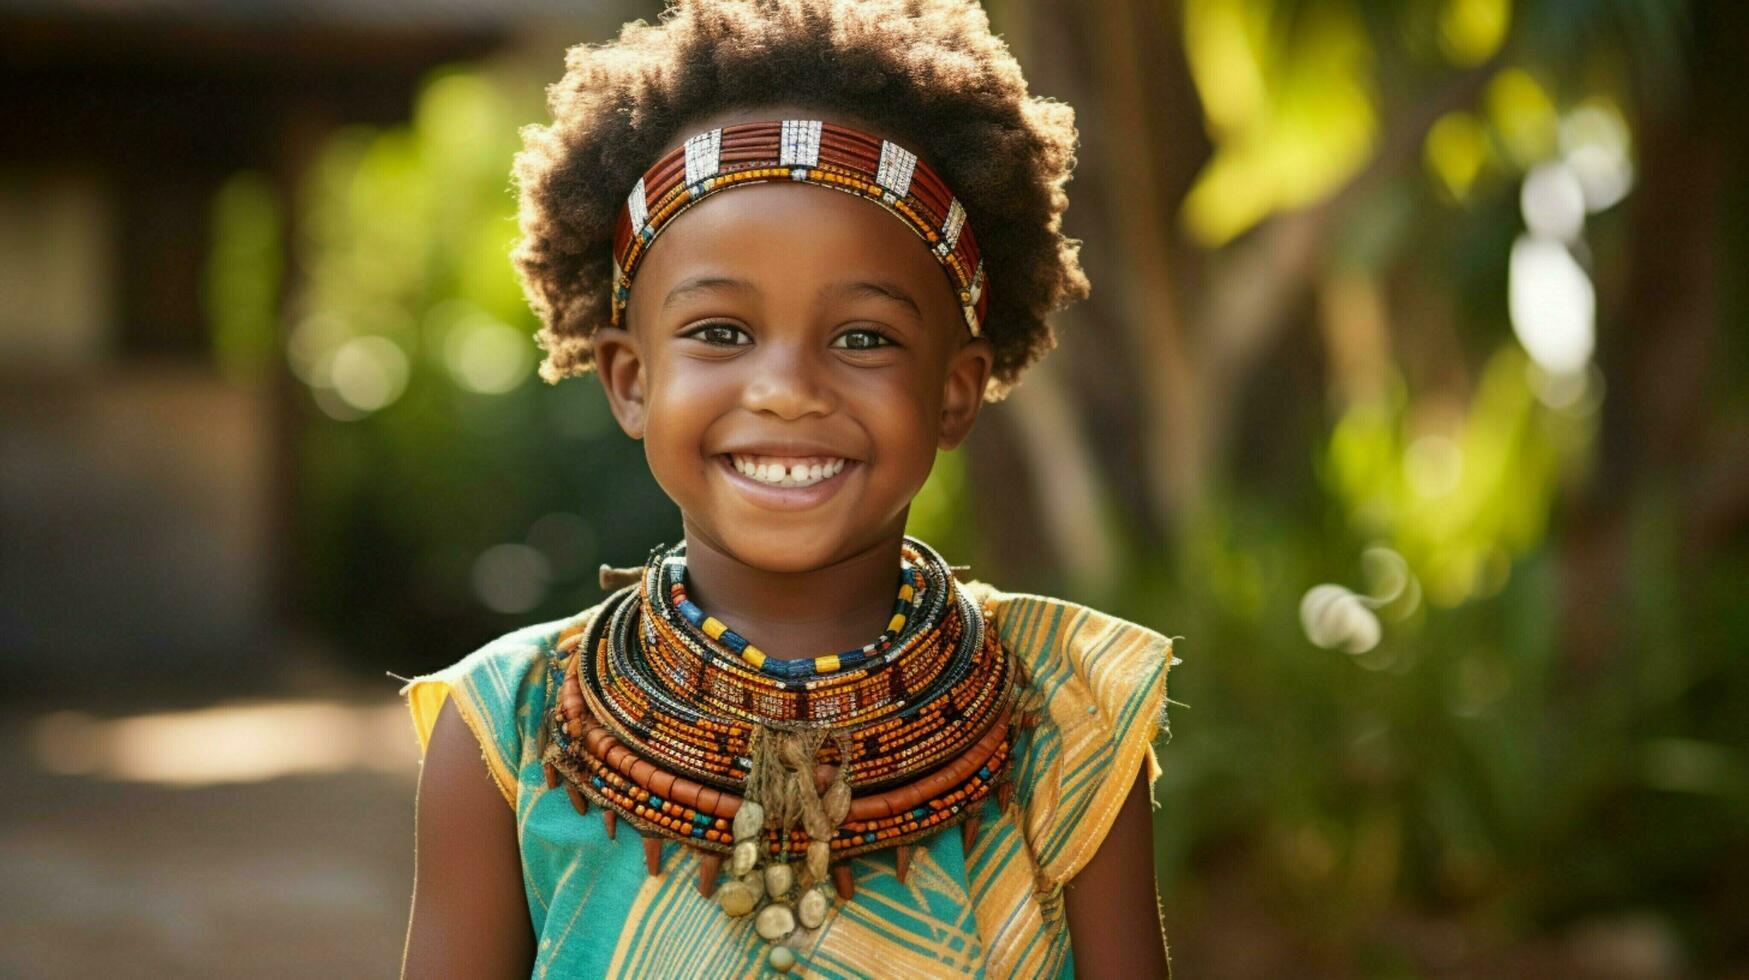 souriant africain enfant permanent en plein air de bonne humeur photo